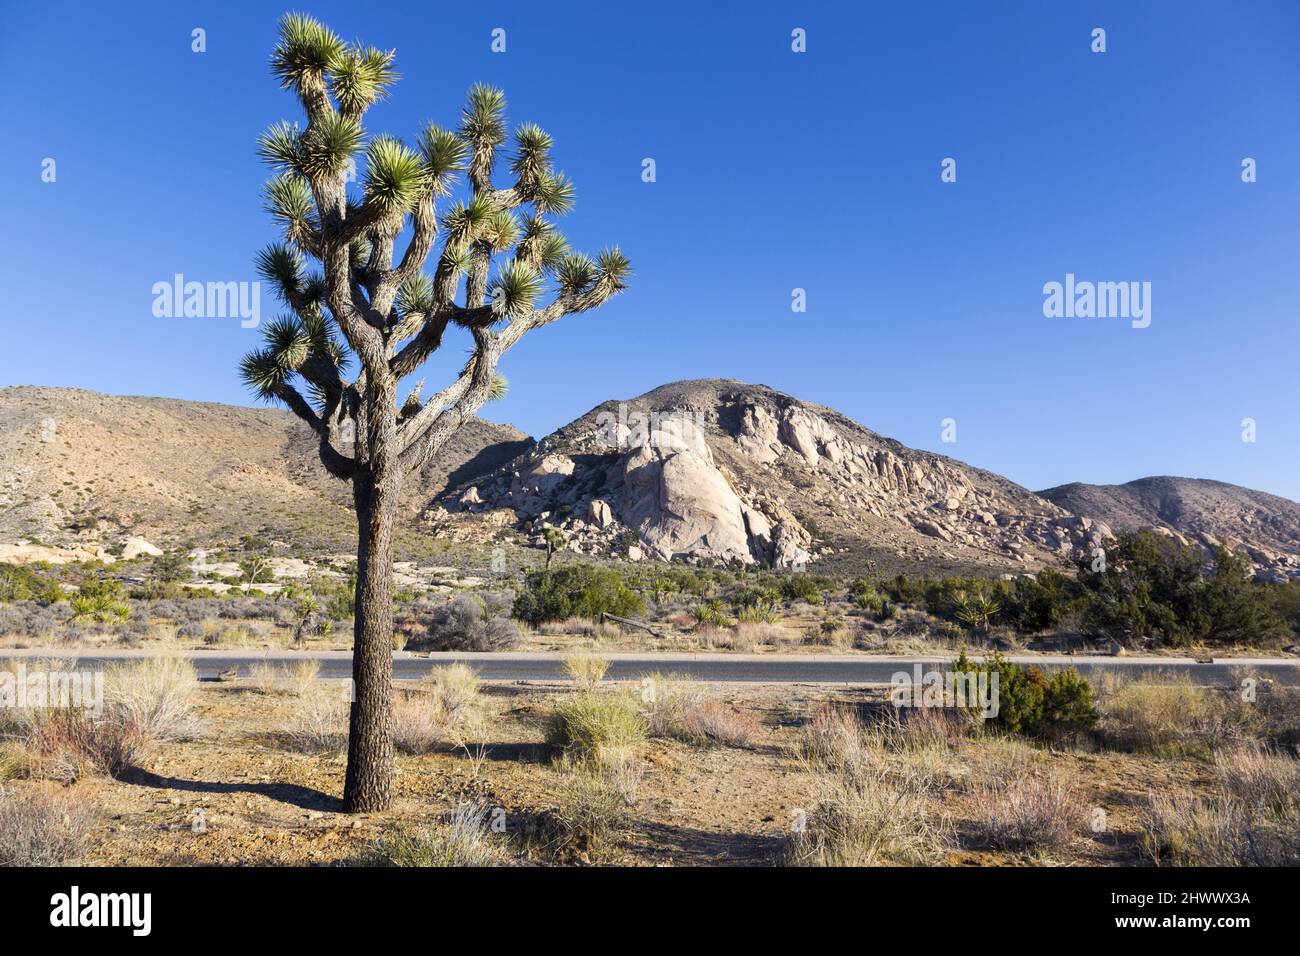 Joshua Tree entfernter Ryan Mountain Peak Blue Sky Hintergrund, landschaftlich reizvolles Sonora High Desert Landschaft sonniger Wintertag Nationalpark Kalifornien USA Stockfoto